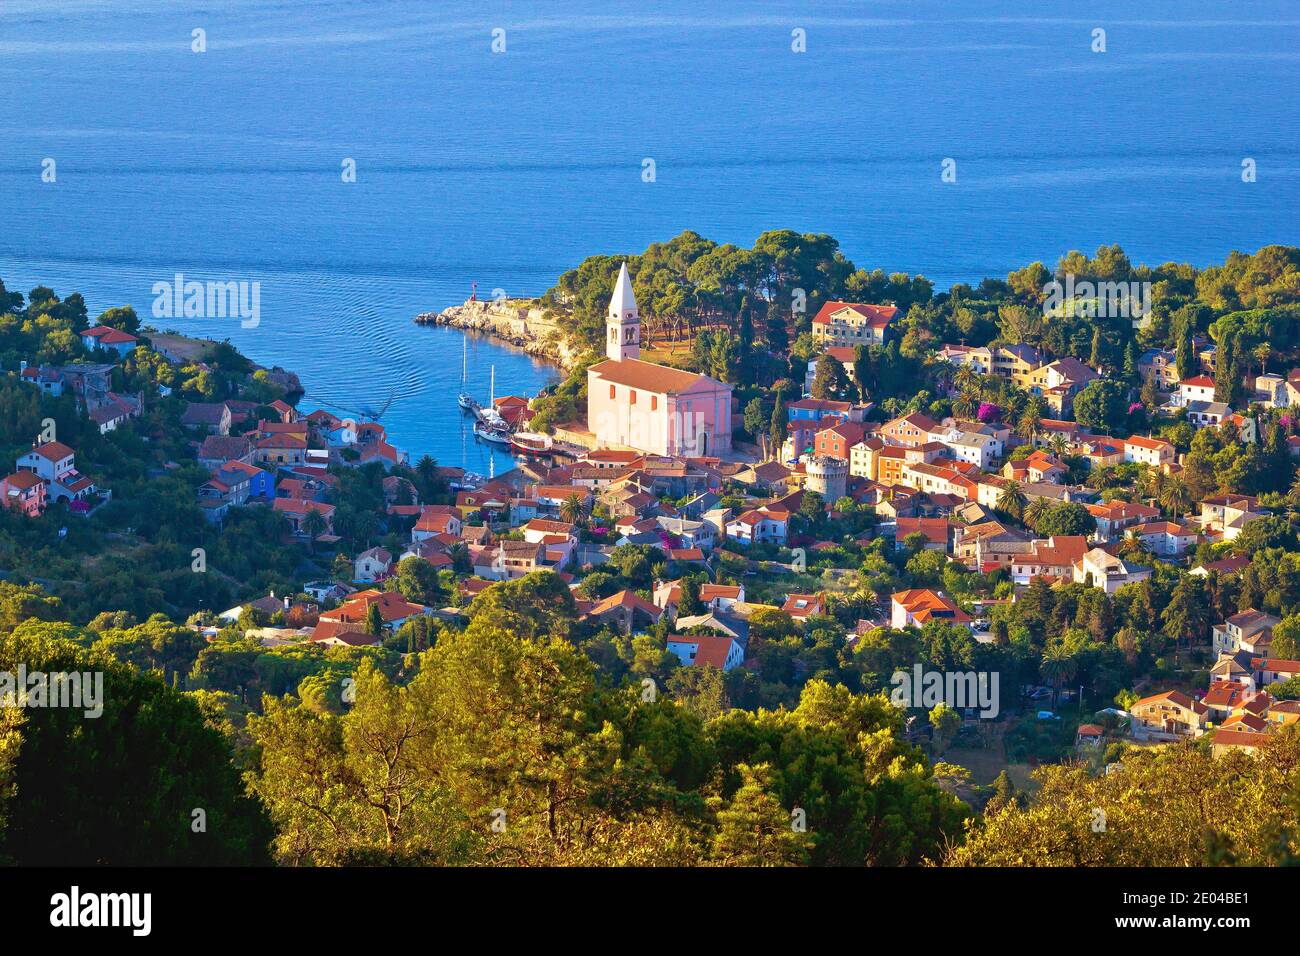 Ville de Veli Losinj vue panoramique aérienne, île de Losinj, Croatie Banque D'Images